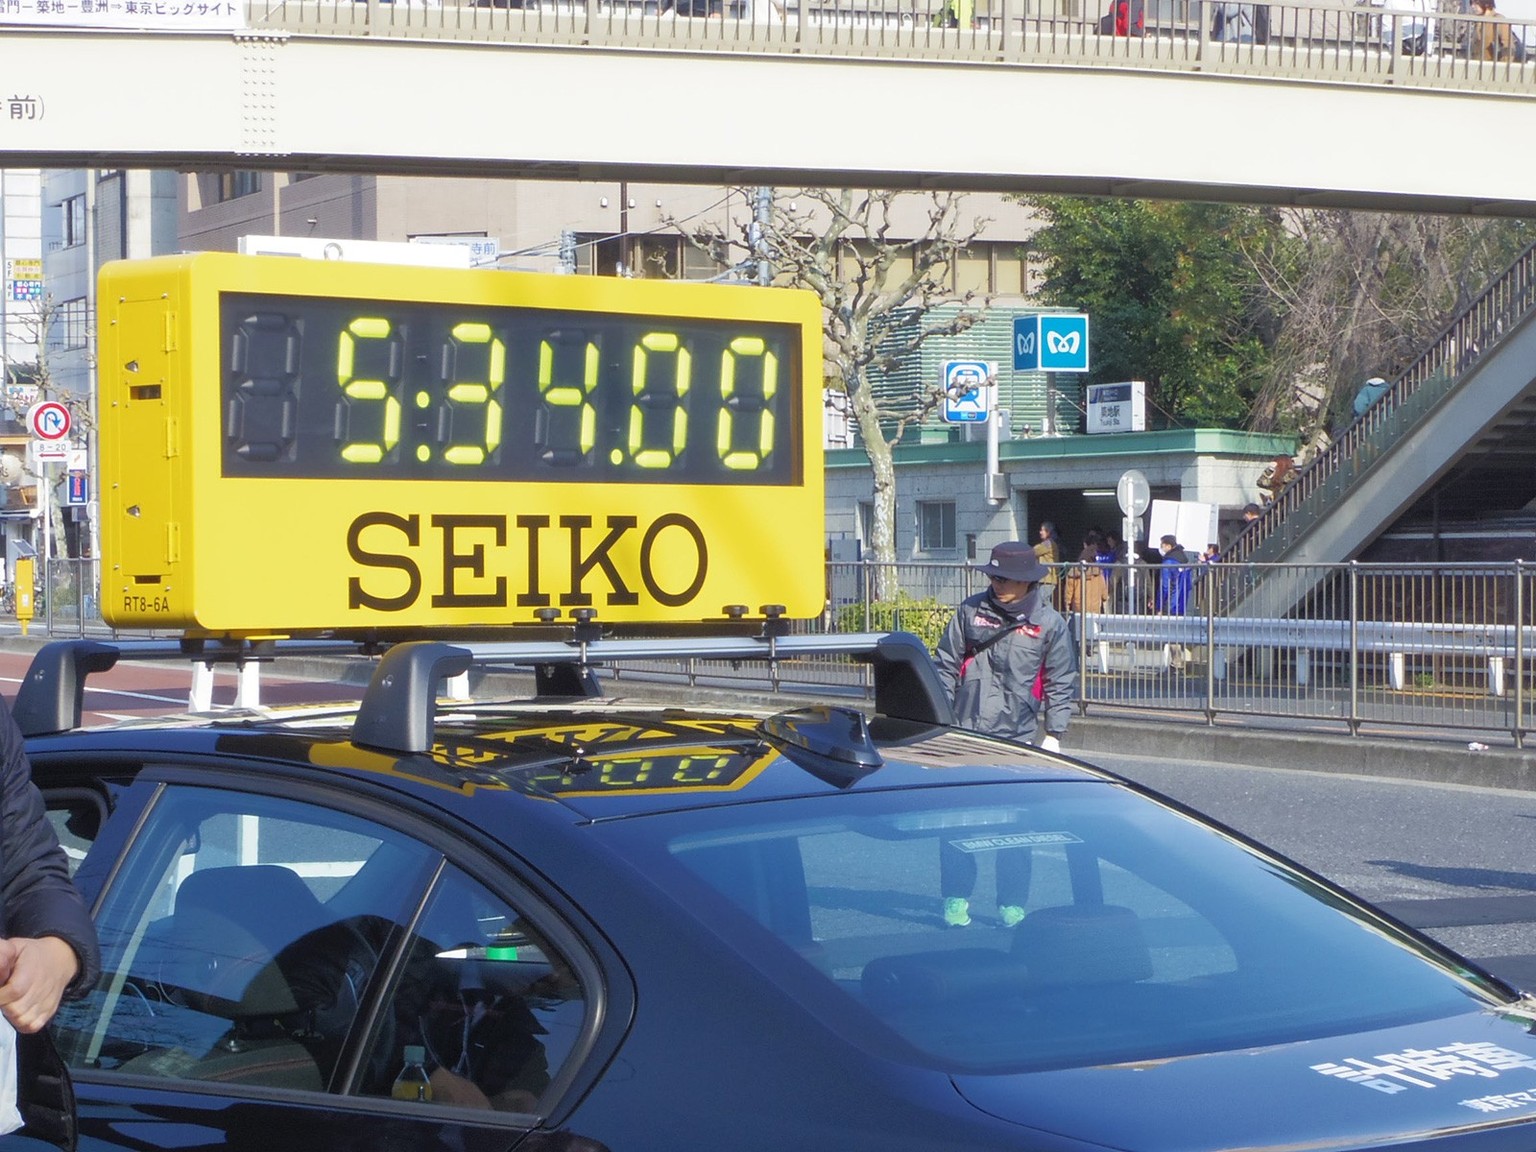 Affichage mobile du temps avec publicité de Seiko lors du marathon de Tokyo, 2016.
https://upload.wikimedia.org/wikipedia/commons/b/bd/Tokyo_Marathon_2016_Time_Car.JPG